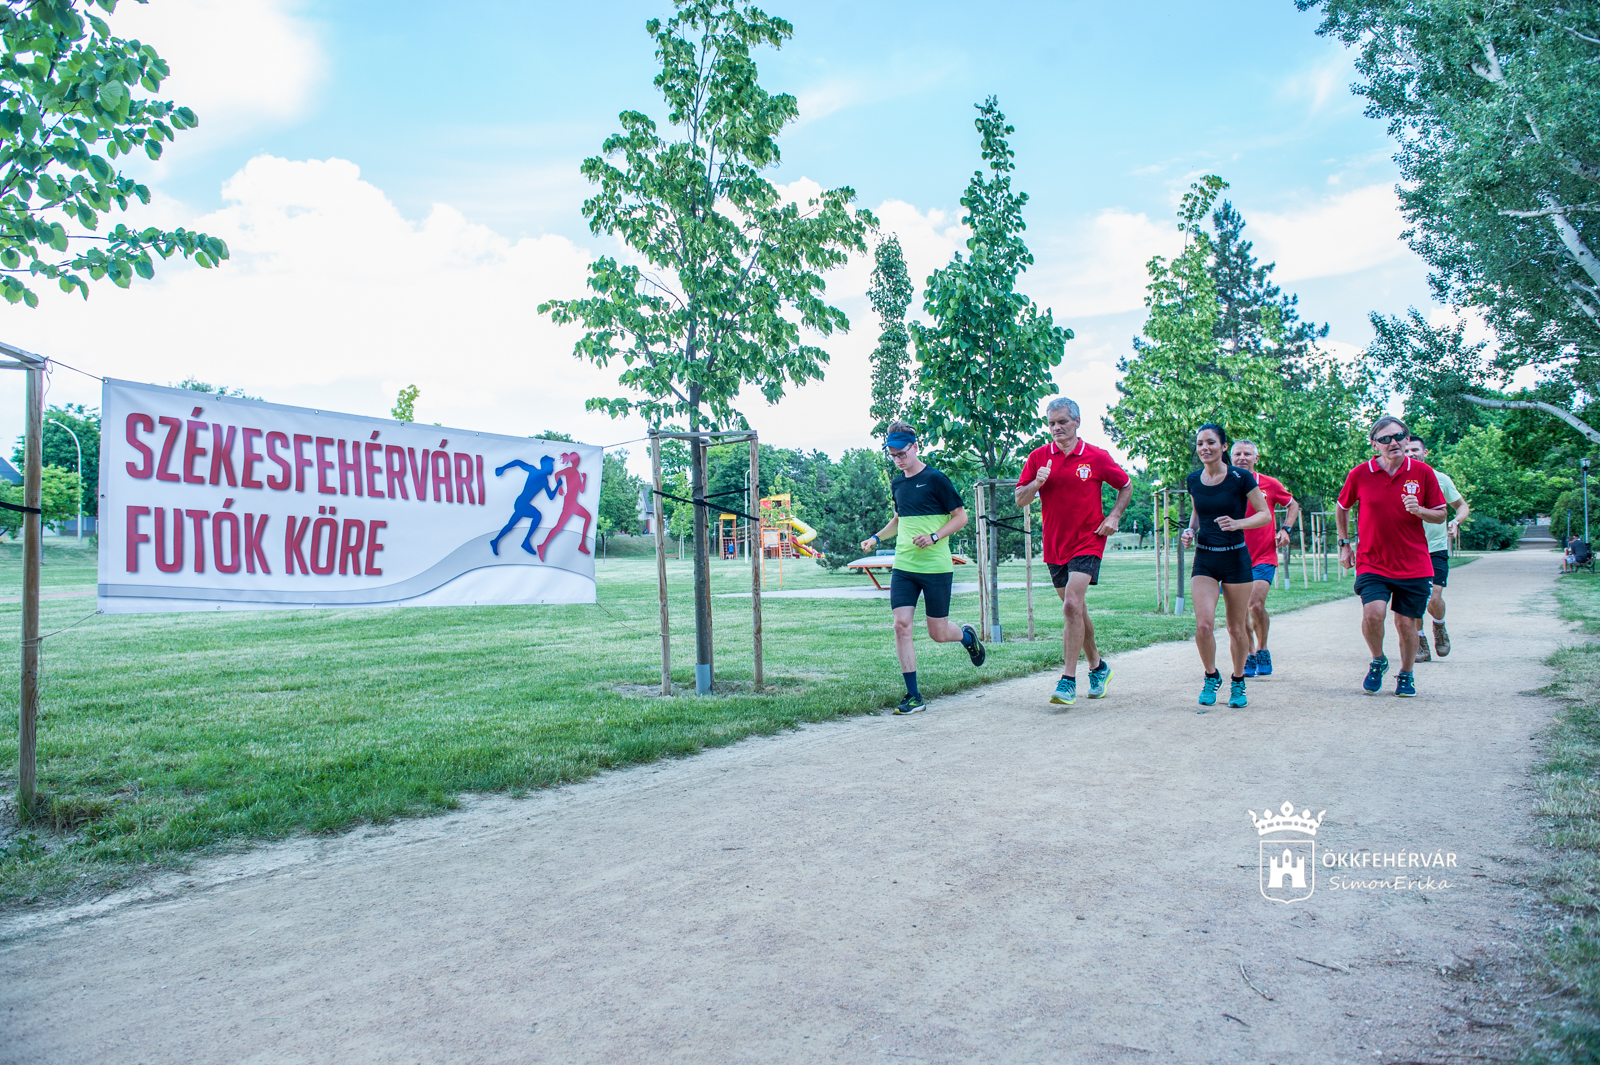 Ingyenes sportolás a Székesfehérvári Futók Körével a Haleszban és Palotavárosban